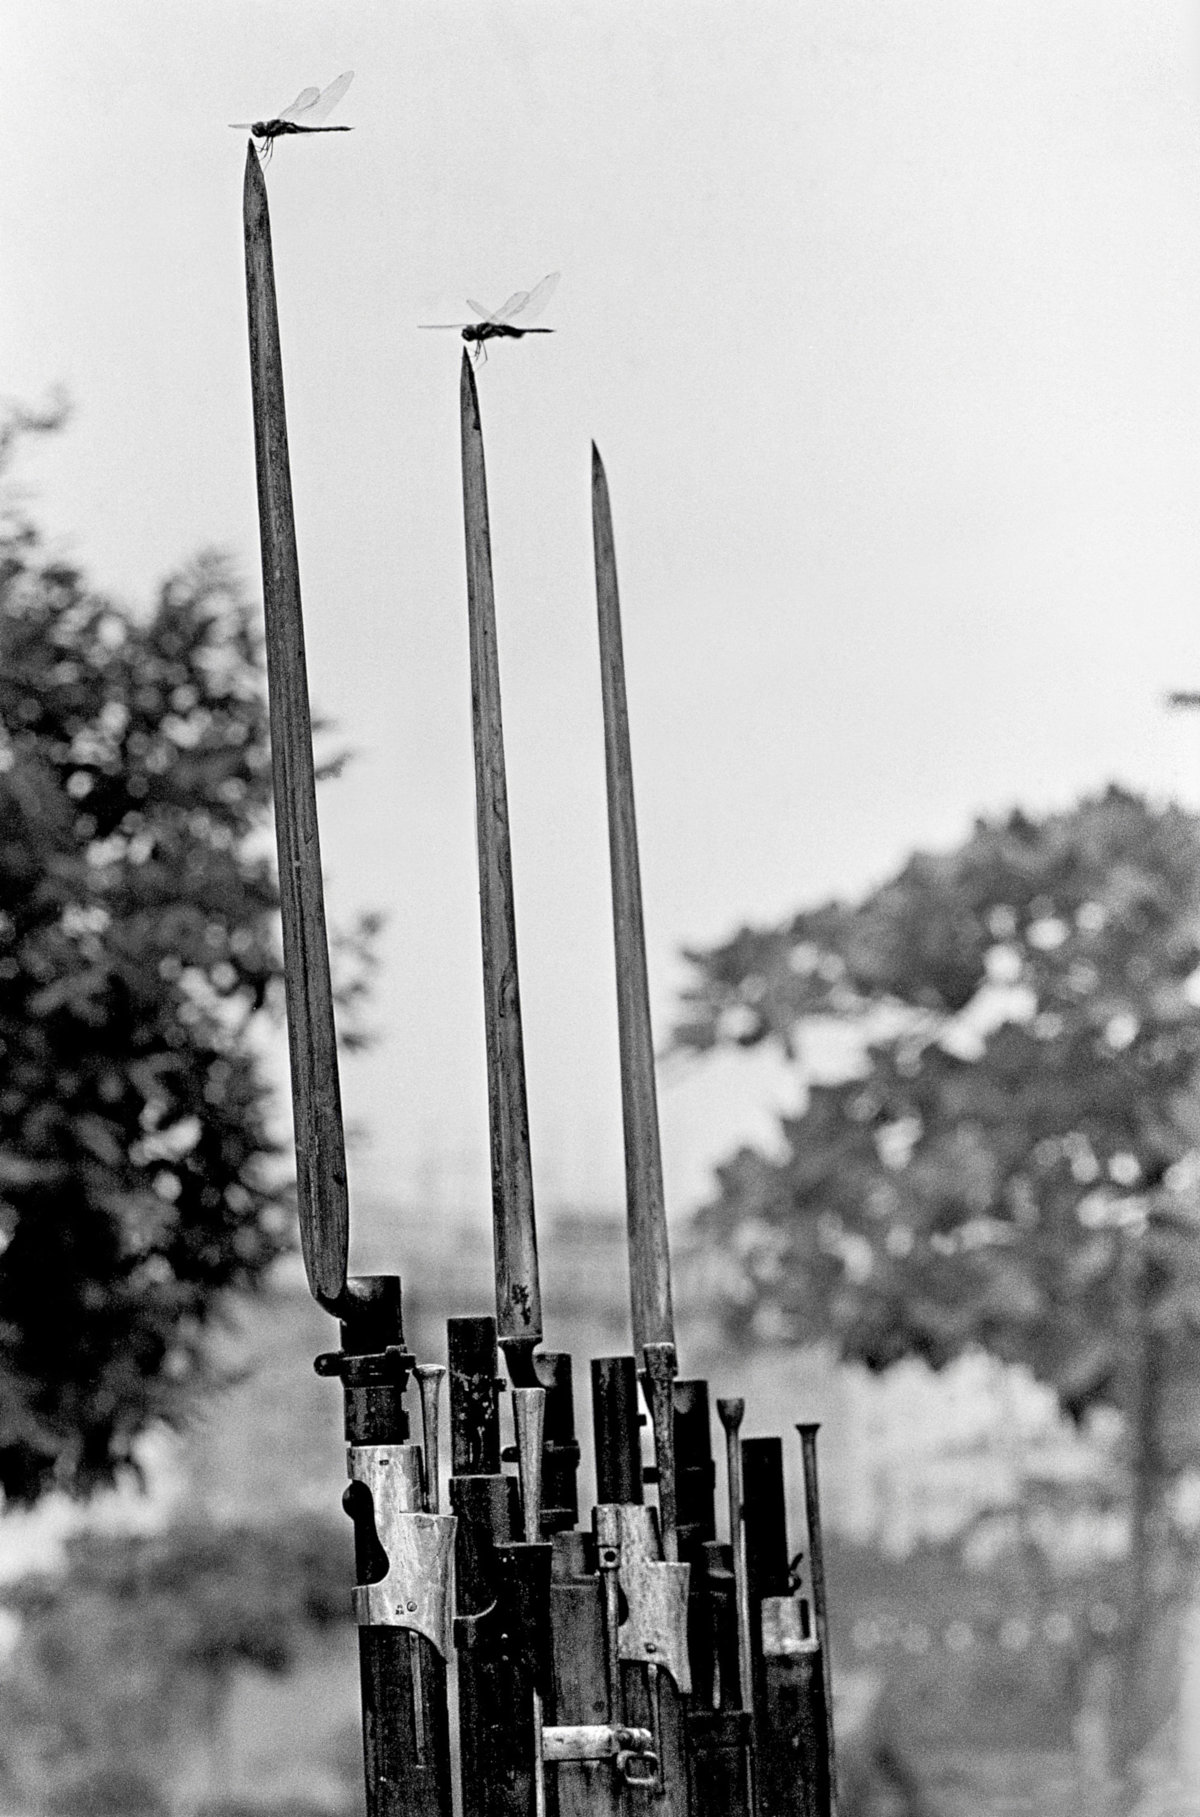 Baionetas e libélulas, Aterro do Flamengo, Rio de Janeiro, 1967 (Evandro Teixeira/Acervo IMS)